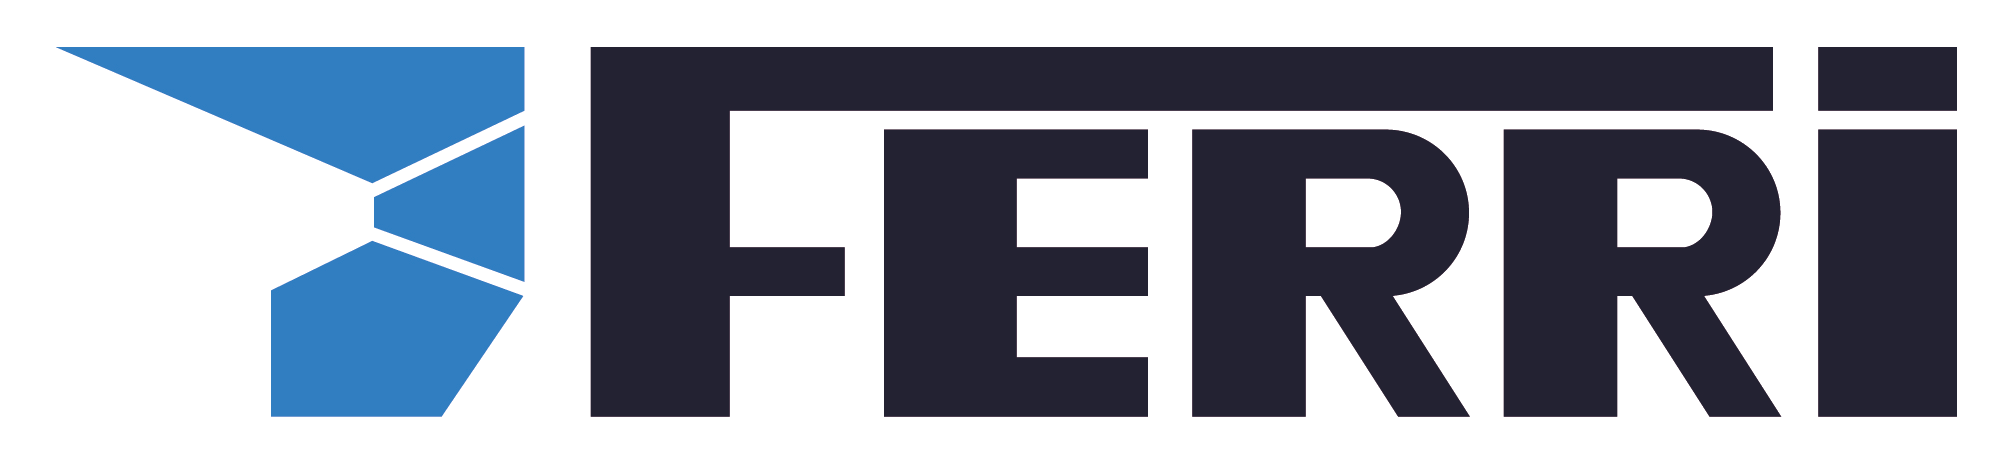 2023 logo Ferri